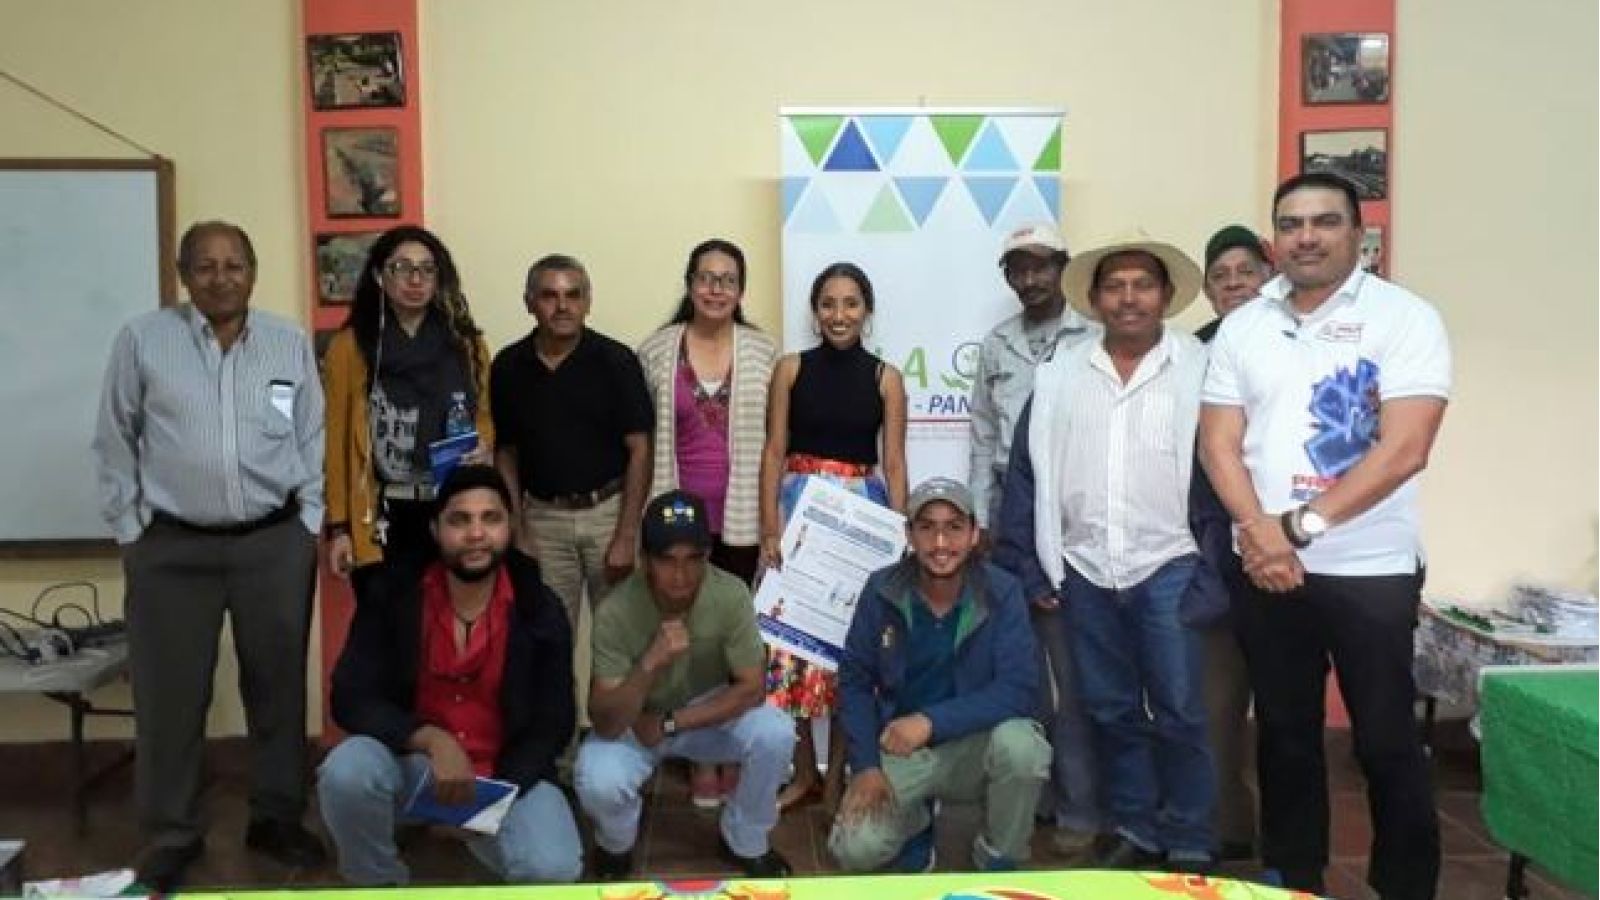 foto de noticia SALA-SEEM Organiza: Reunión de divulgación con Fundación para el Desarrollo Integral Comunitario y Conservación de los Ecosistemas en Panamá (FUNDICCEP) y otras organizaciones Agro-ecoturísticas y Ambientales de la región de Tierras Altas, Chiriquí.